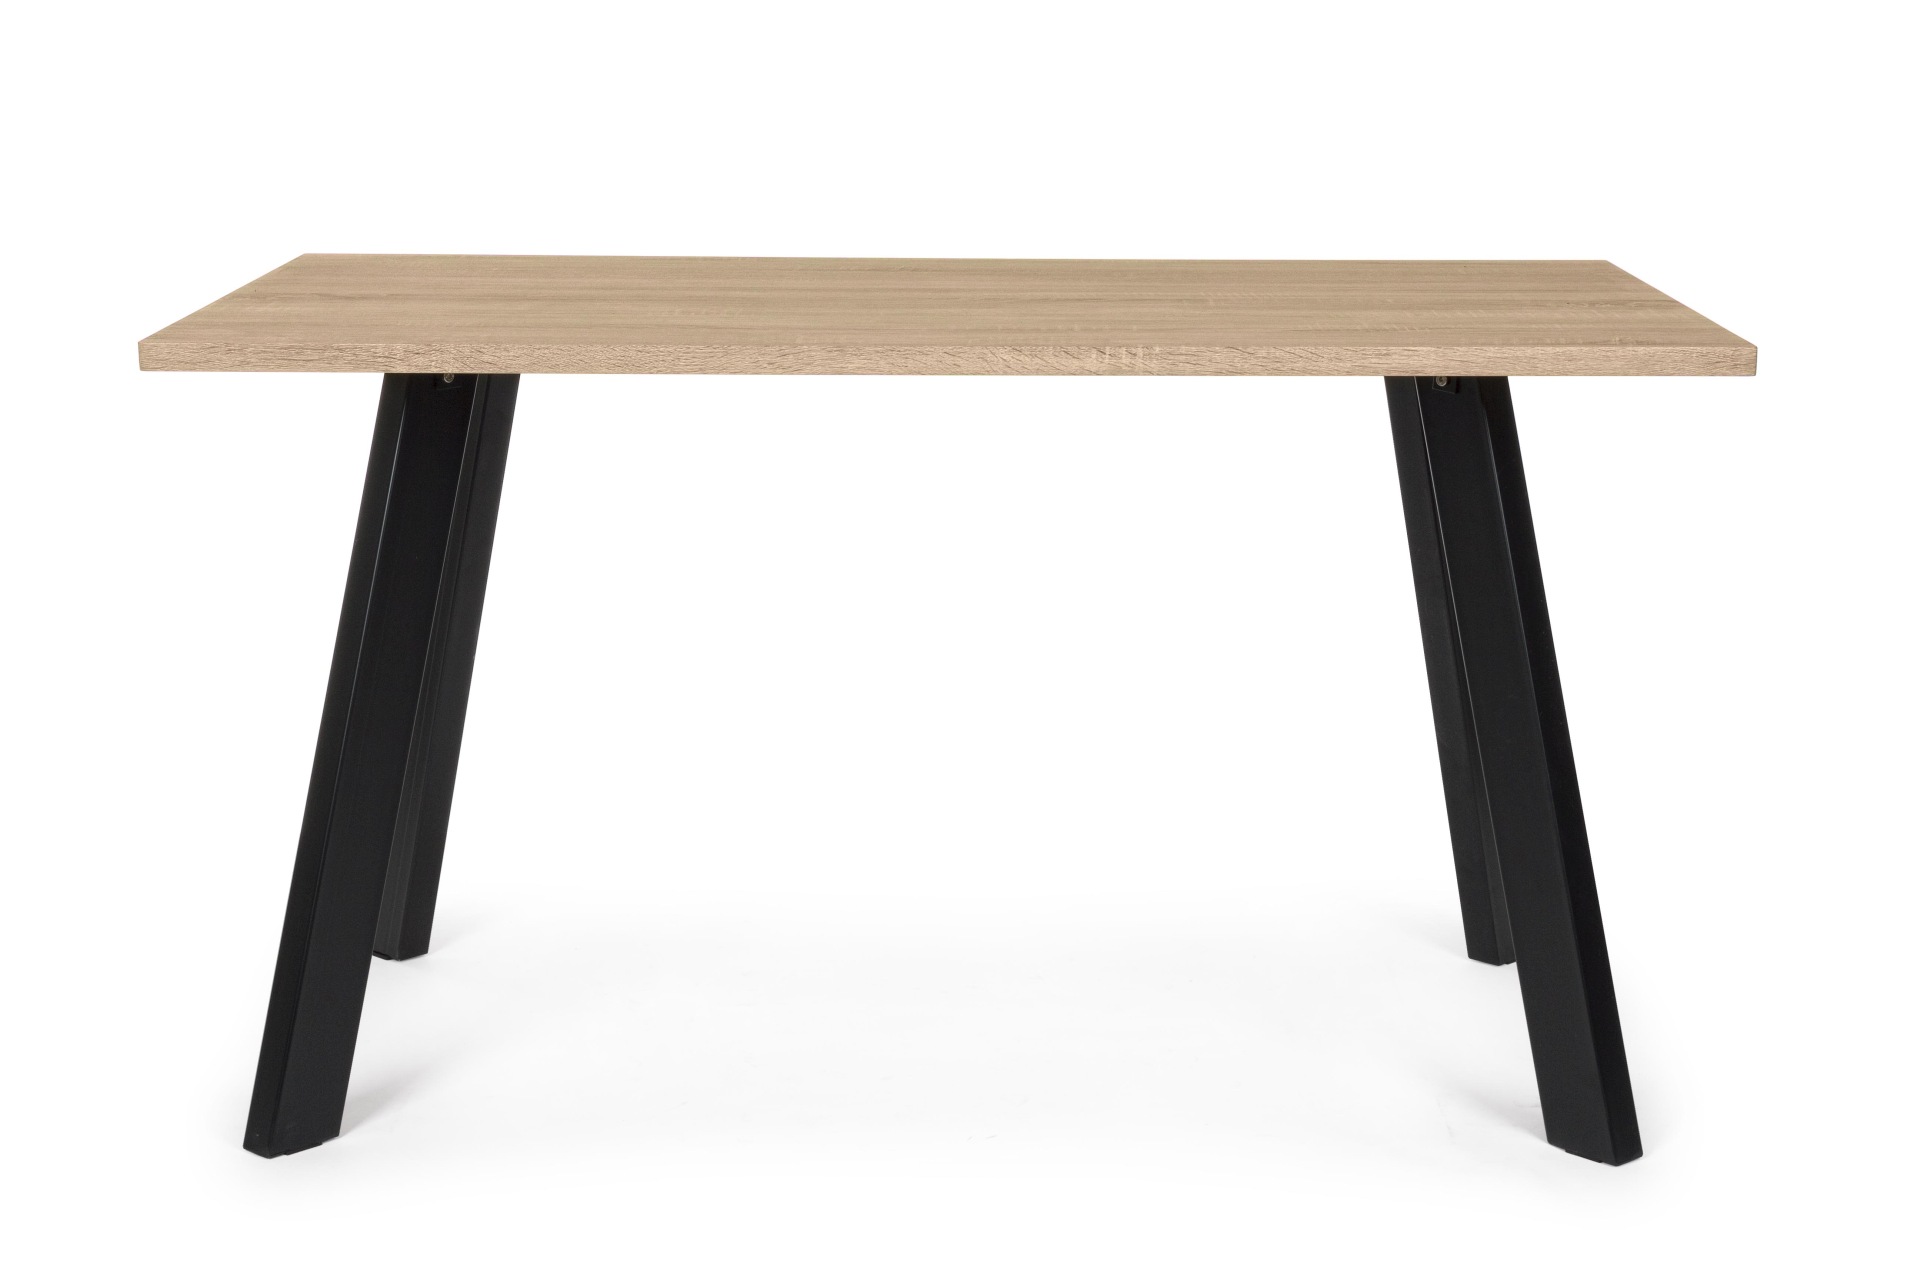 Der Esstisch Giant überzeugt mit seinem modernem Design. Gefertigt wurde er aus MDF, welches eine Holz-Optik besitzt. Das Gestell des Tisches ist aus Metall und hat eine schwarze Farbe. Der Tisch hat eine Breite von 140 cm.